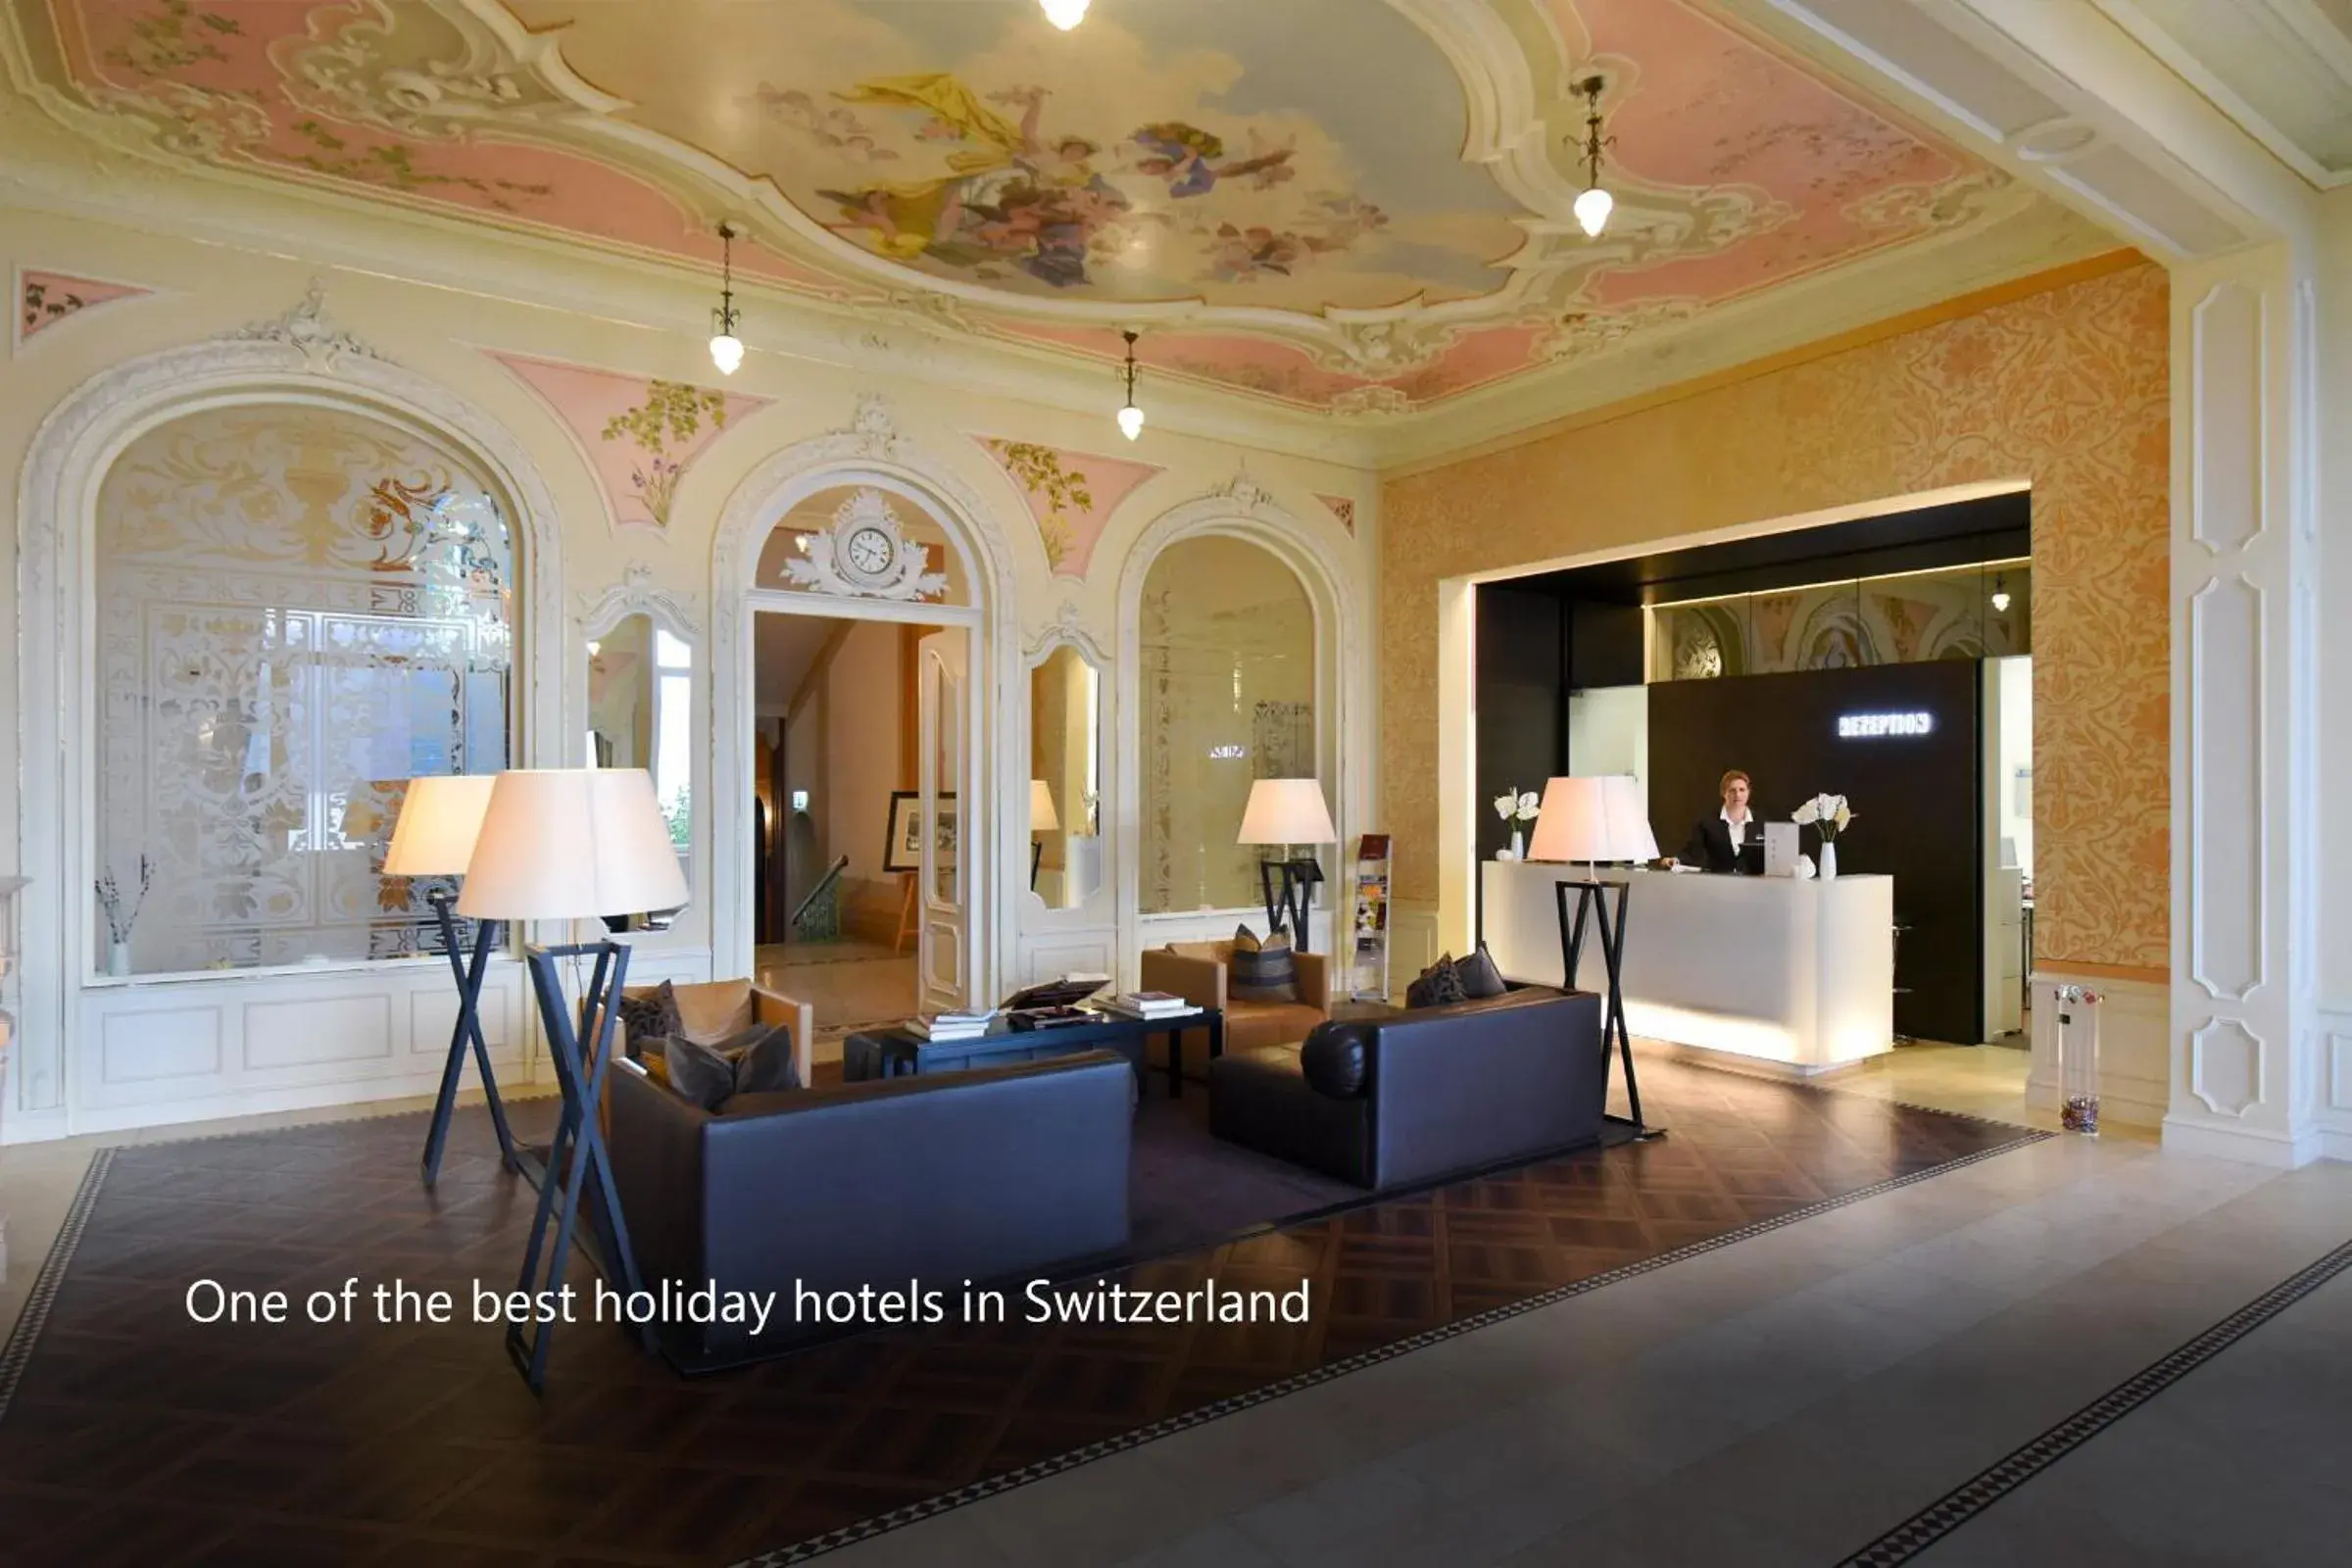 Lobby or reception, Lobby/Reception in Hotel Vitznauerhof